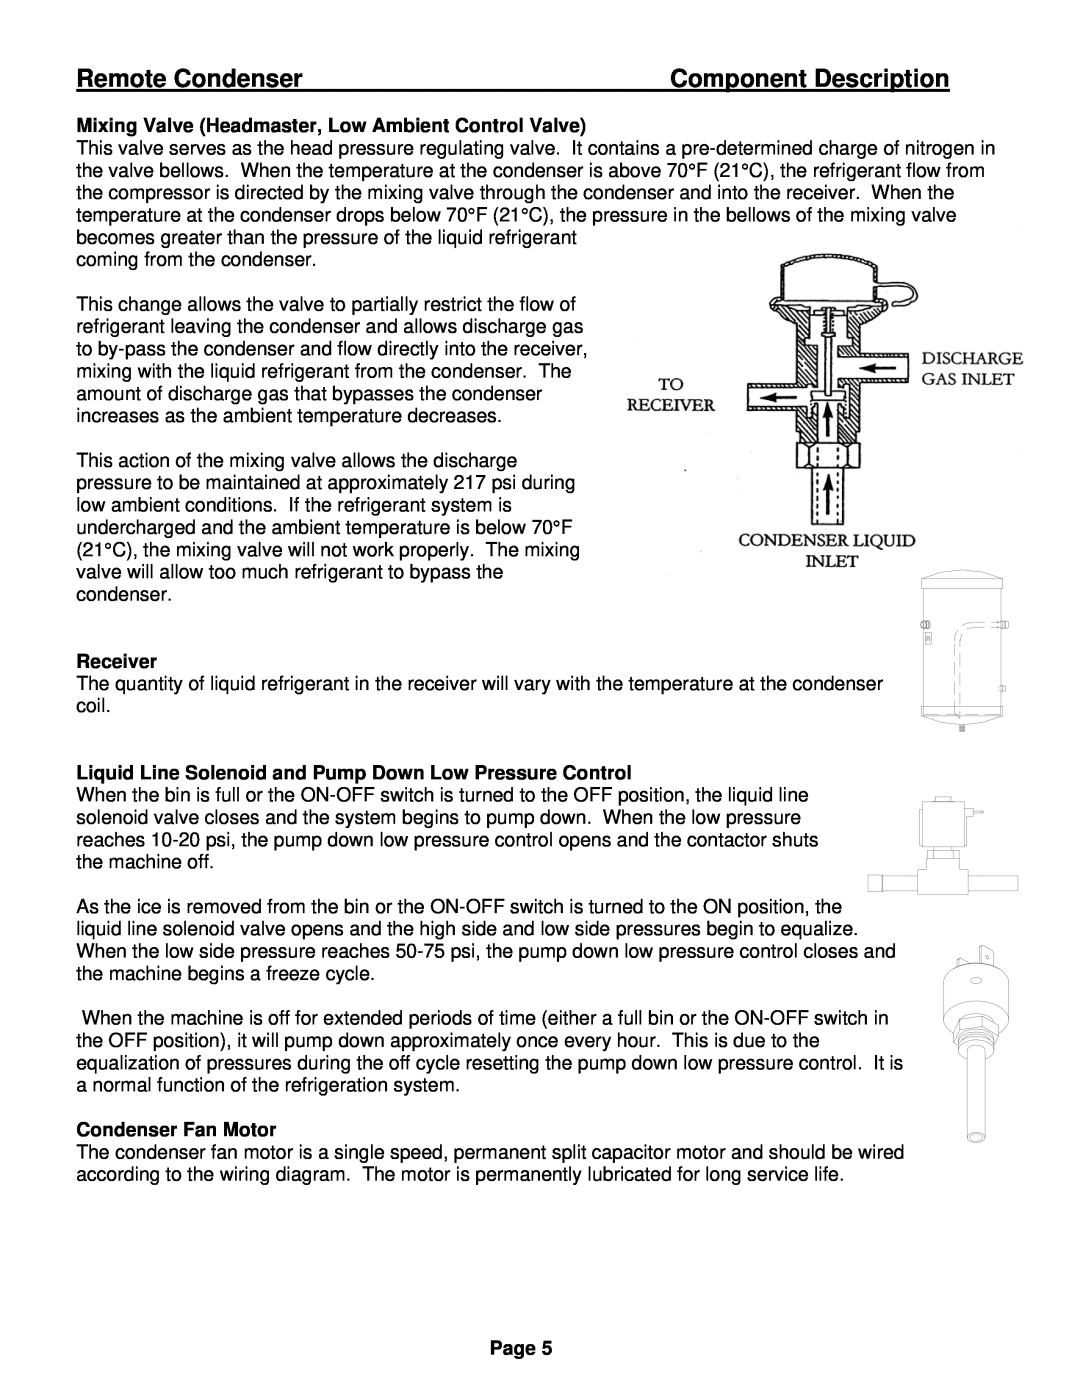 Ice-O-Matic VRC manual Component Description, Remote Condenser, Receiver, Condenser Fan Motor, Page 